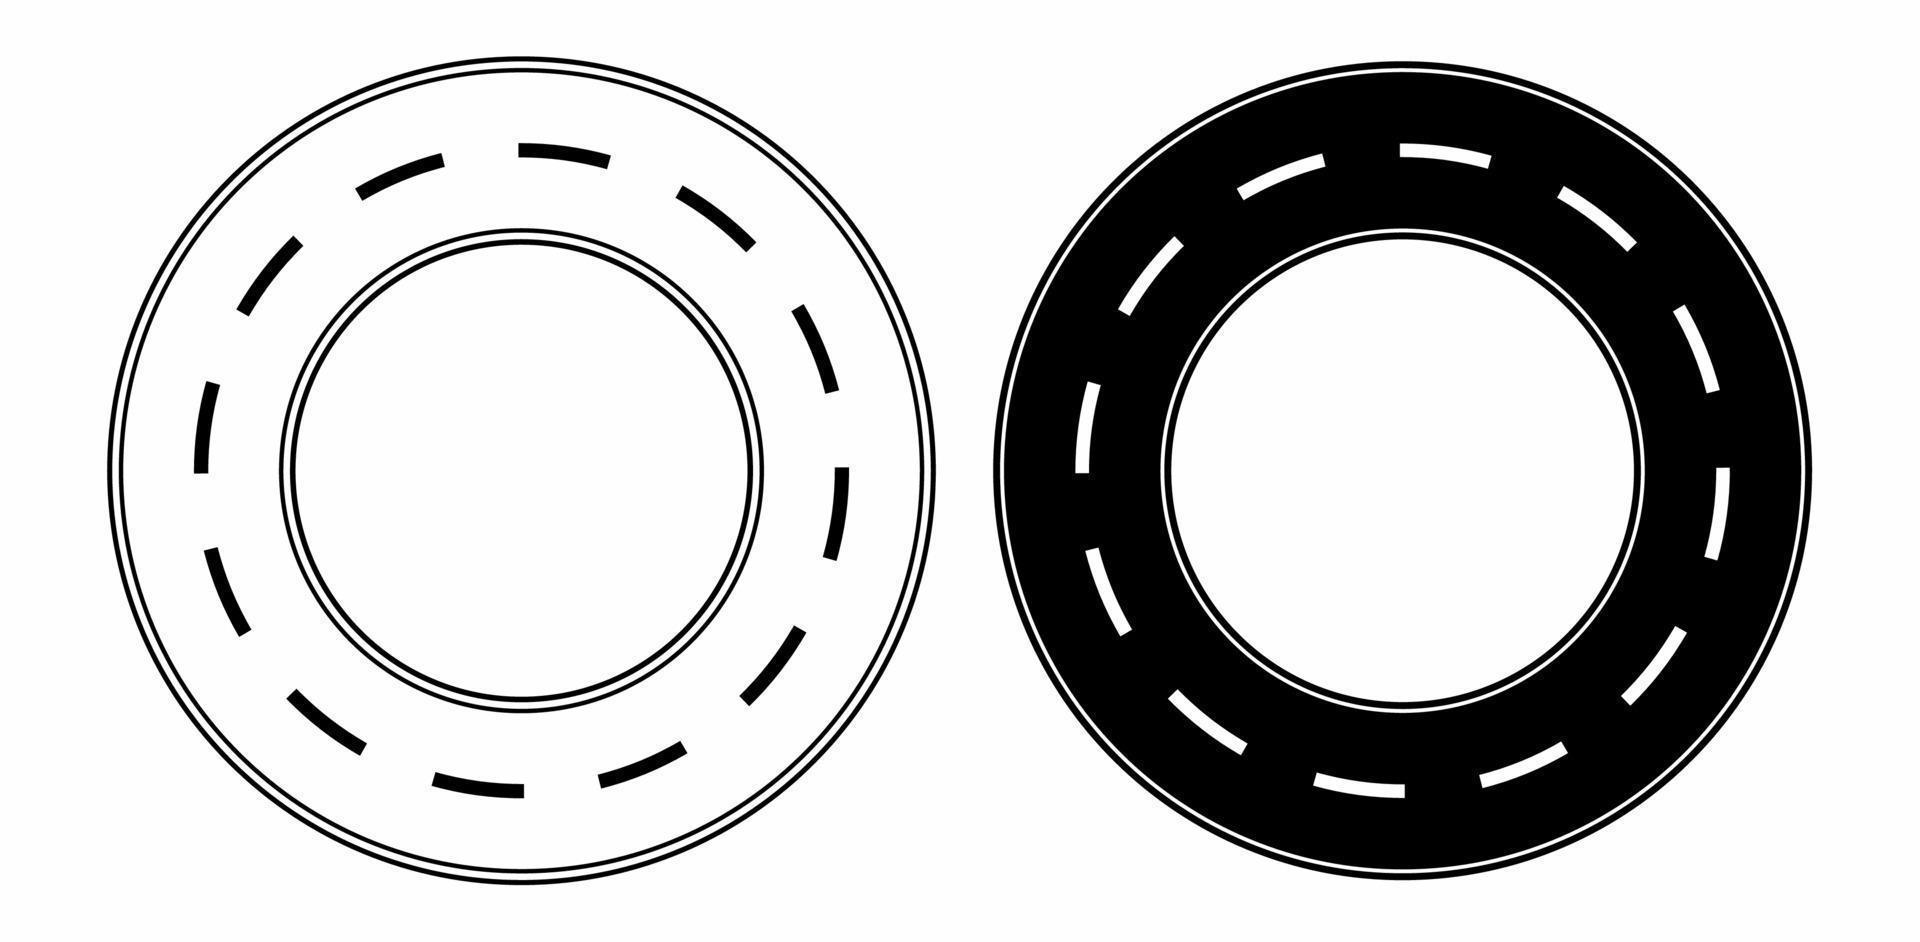 estrada do círculo conjunto isolado no fundo branco vetor